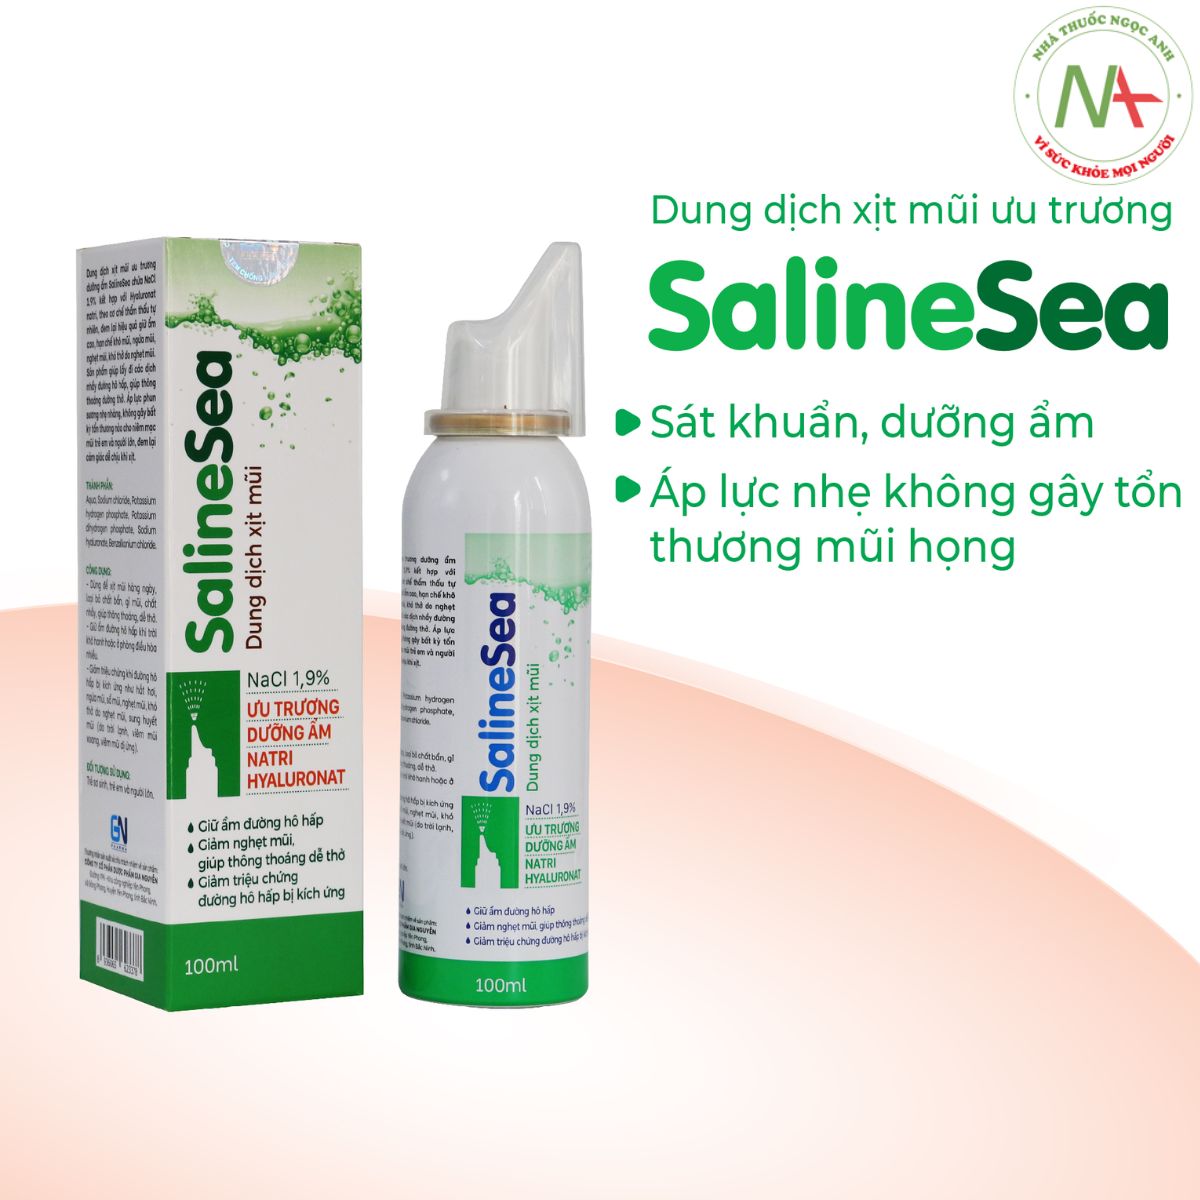 Sung dịch xịt mũi ưu trương Salinsea được nhiều người tin dùng